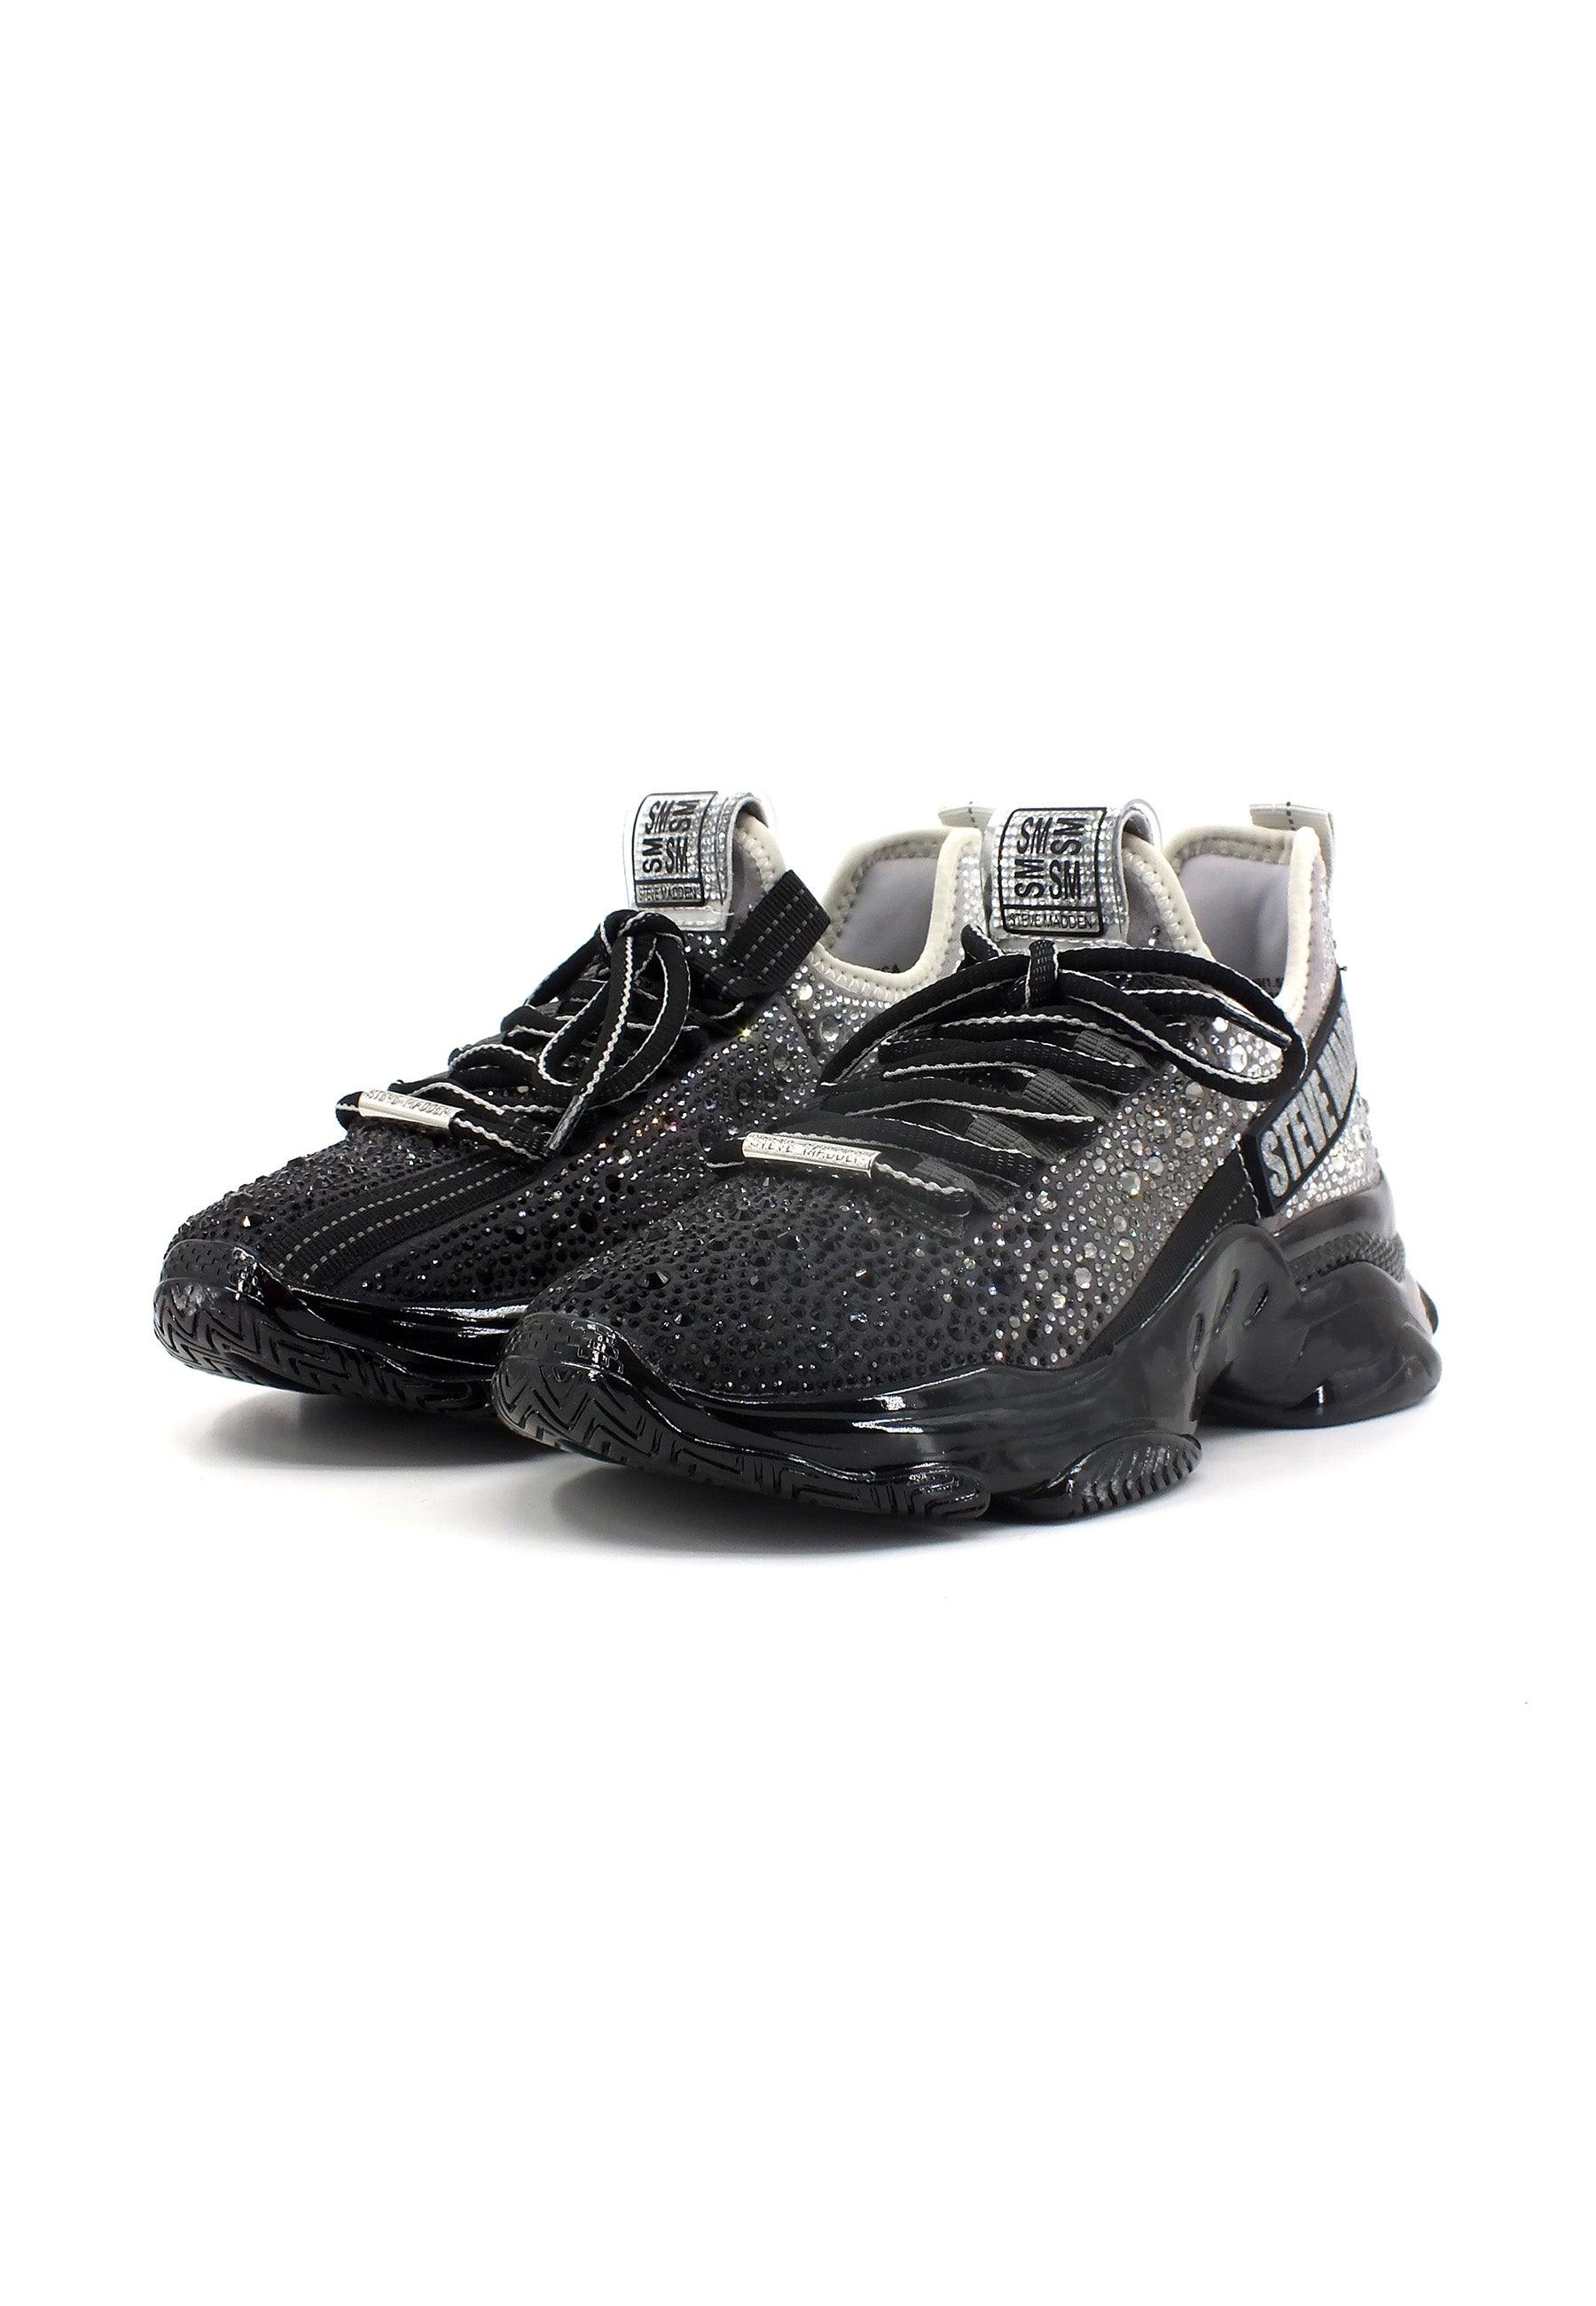 STEVE MADDEN Mistica Sneaker Donna Black Silver MIST05S1 - Sandrini Calzature e Abbigliamento